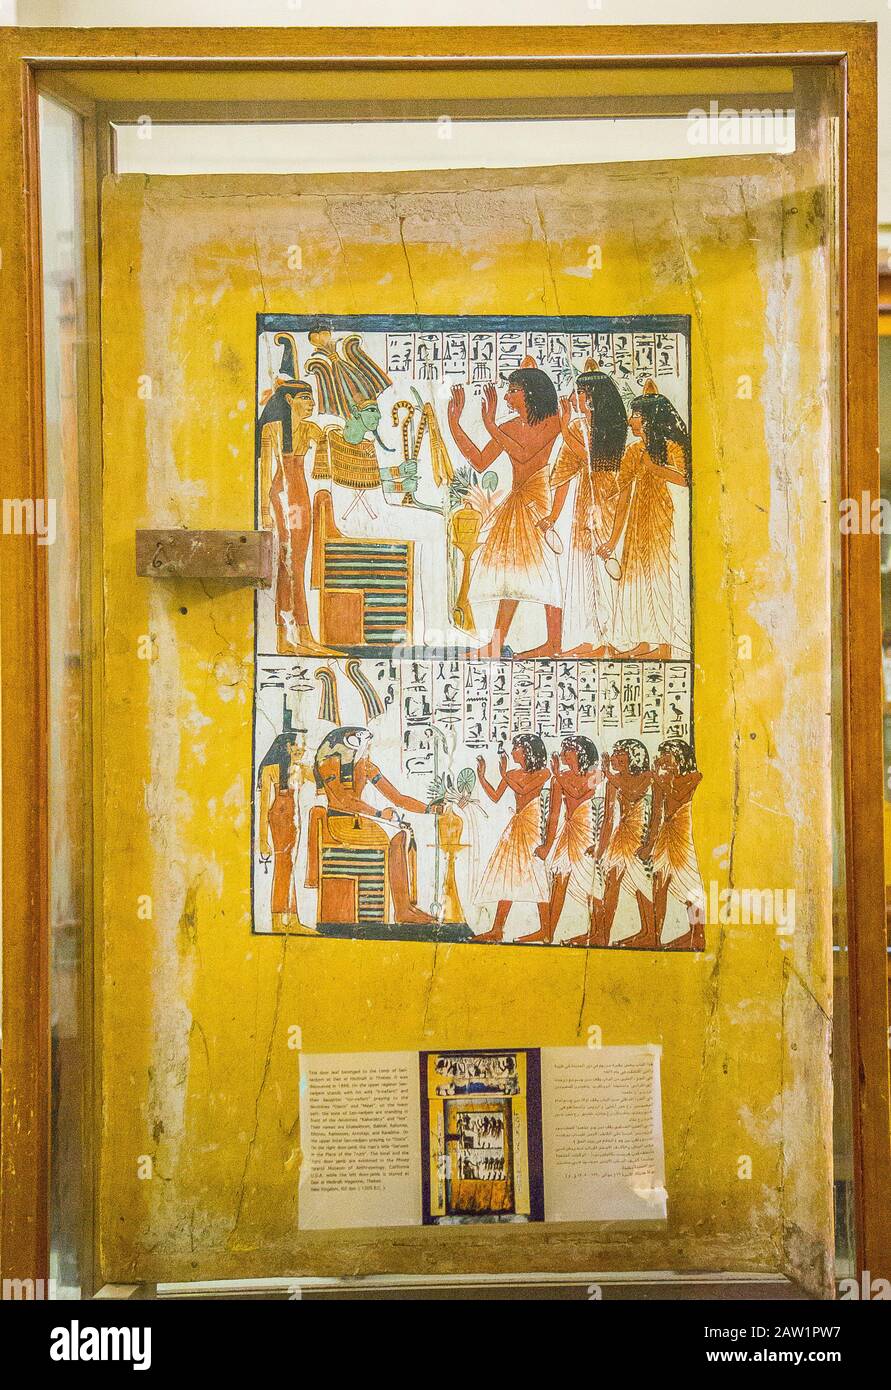 Egitto, Cairo, Museo Egizio, dalla tomba di Sennedjem, Deir el Medina : pannello porta (verso), Sennedjem e la sua famiglia adorano divinità. 2 registri. Foto Stock